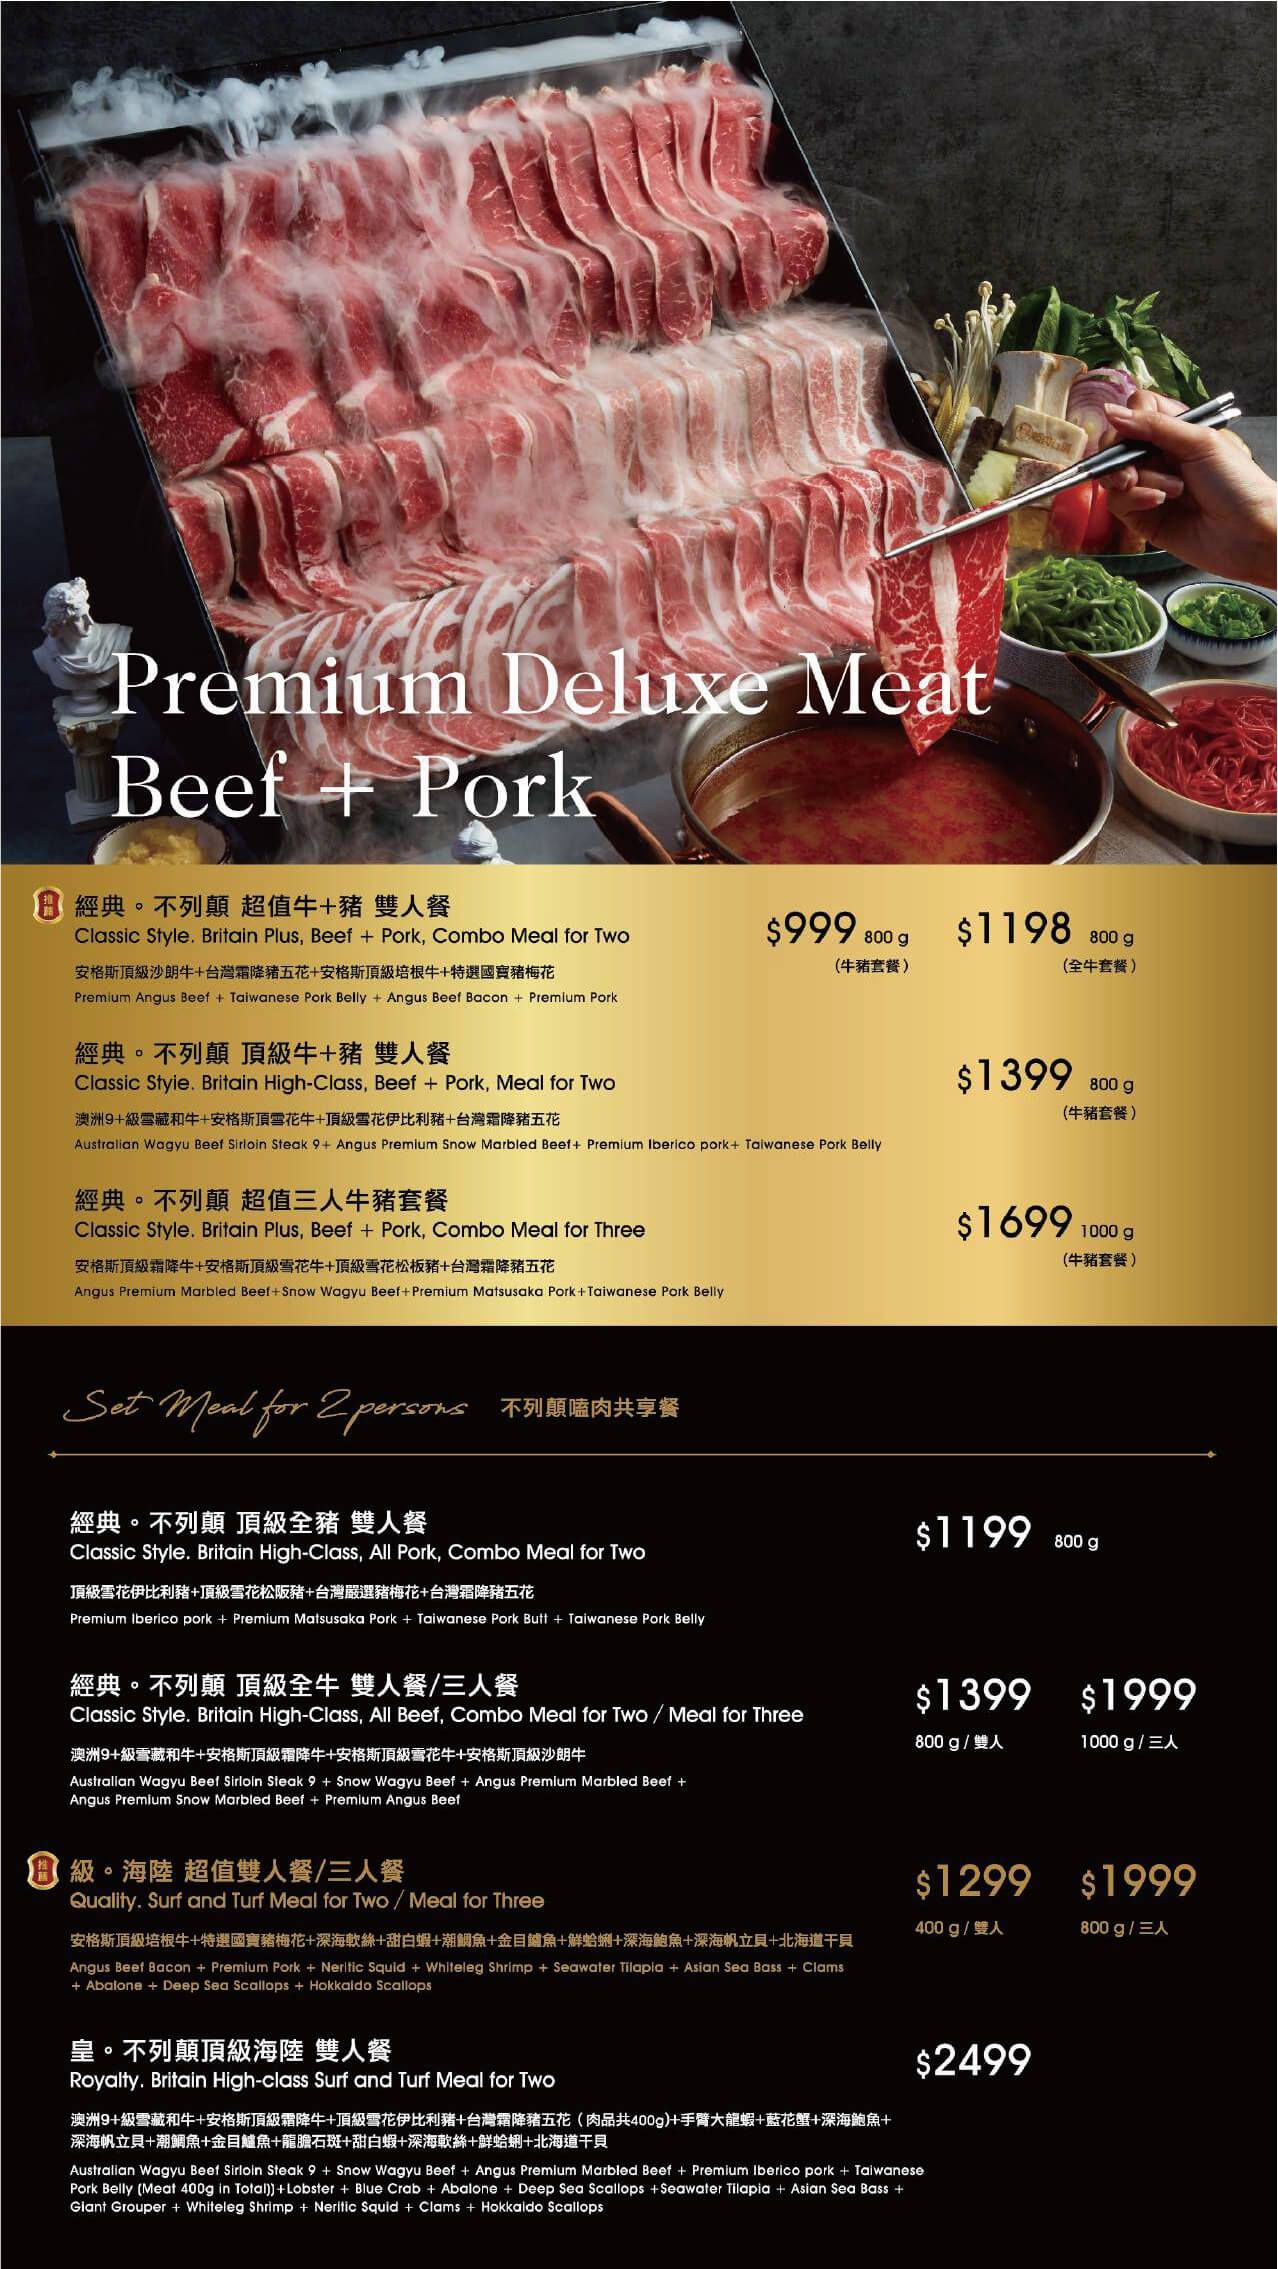 嗑肉石鍋二代店菜單提供雙人套餐、三人套餐等更優惠加肉量的選擇